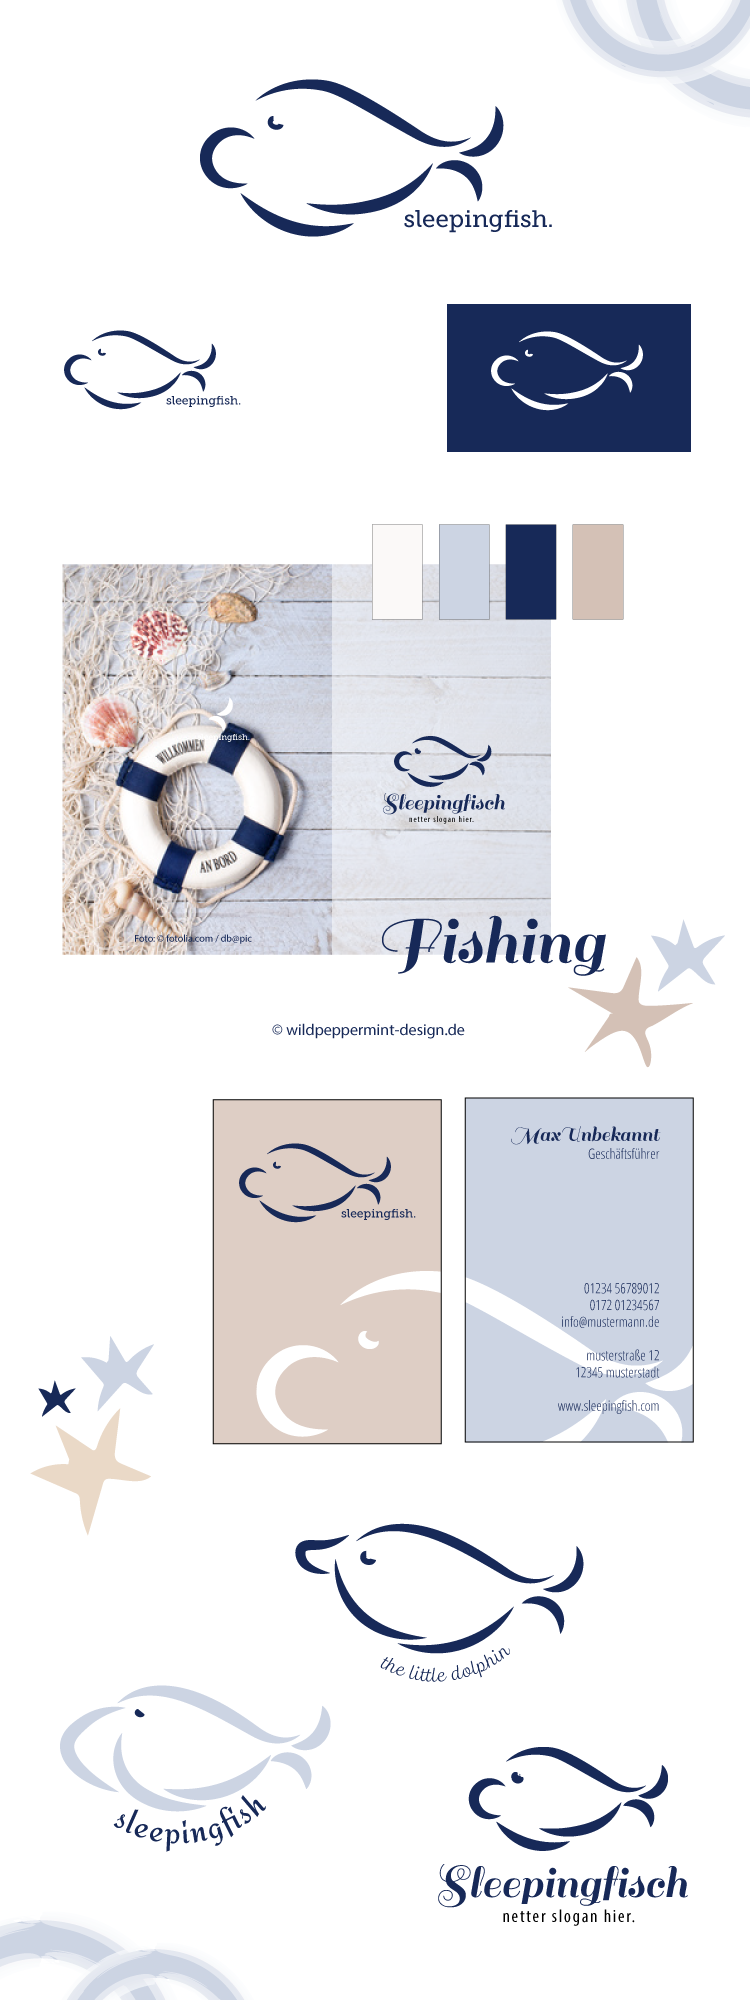 Logo Entwürfe Maritim Fisch, freie Logoentwürfe, Symbol Fisch, Logo mit Fisch, Nordisch, wildpeppermint-design.de